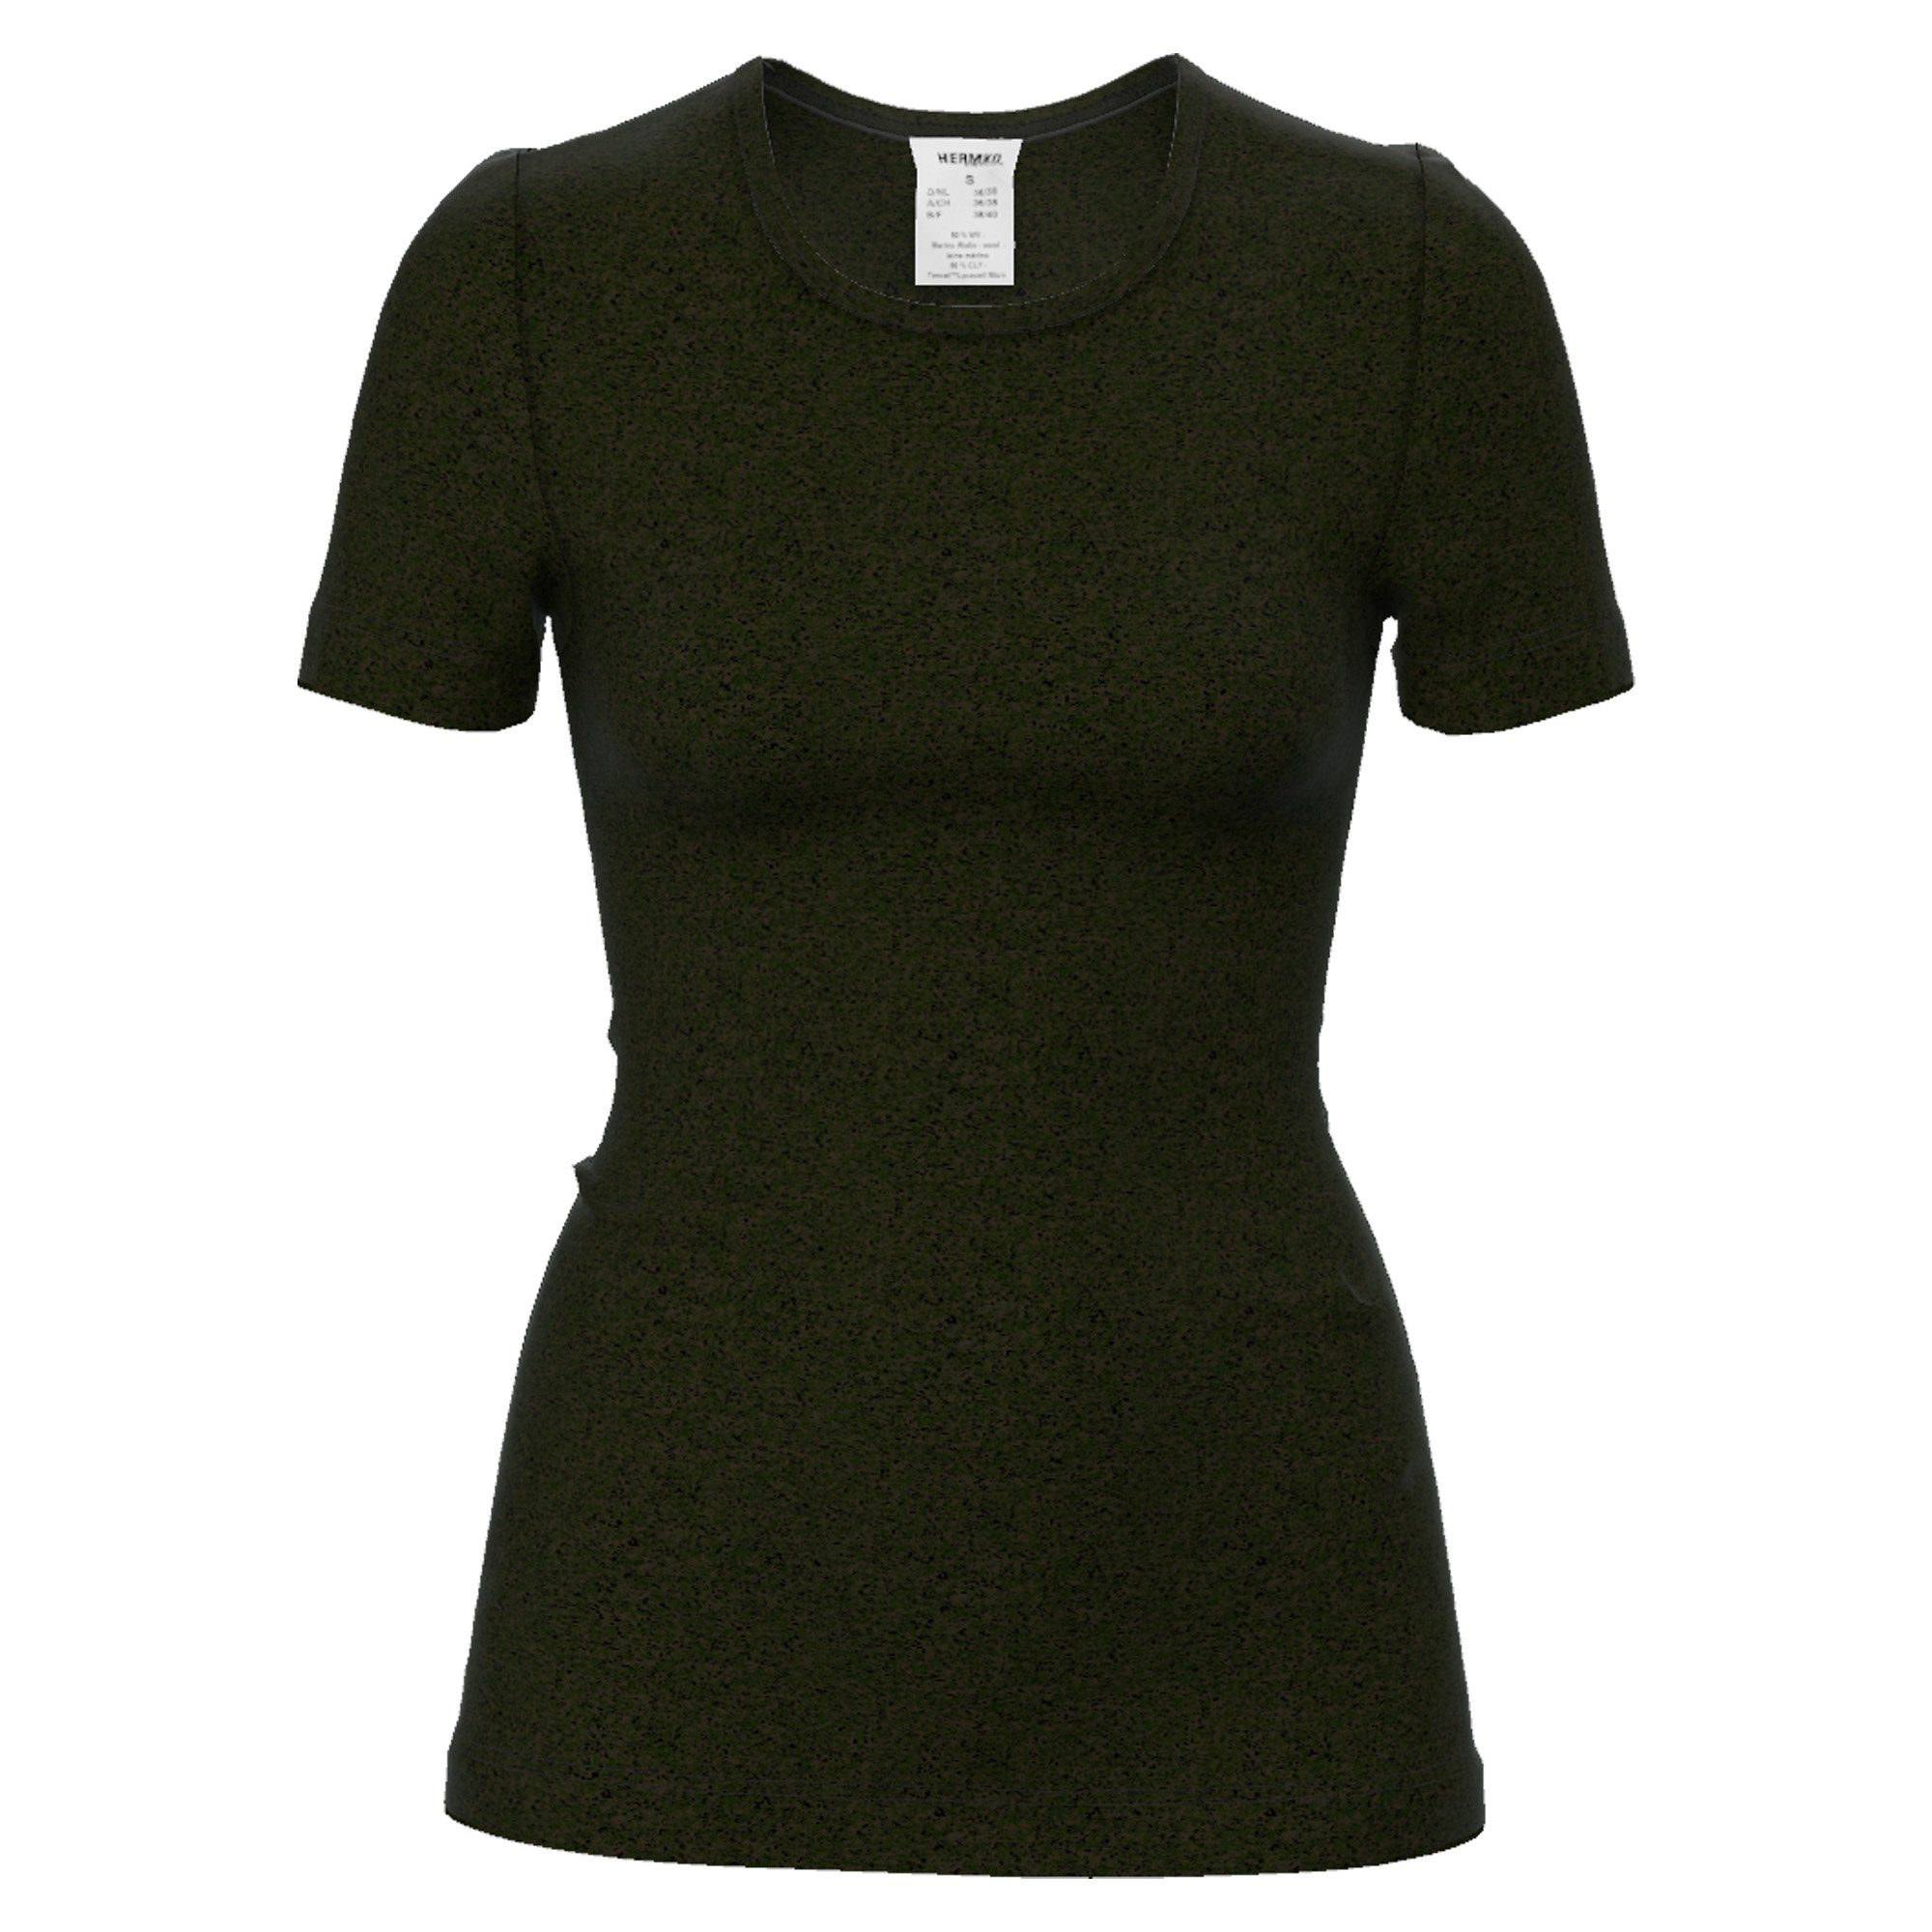 [Super beliebte Artikelnummer! ] HERMKO Unterhemd 40800 Damen kurzarm Rundhals-Ausschnitt schwarz Wolle/Tencel aus Unterhemd mit